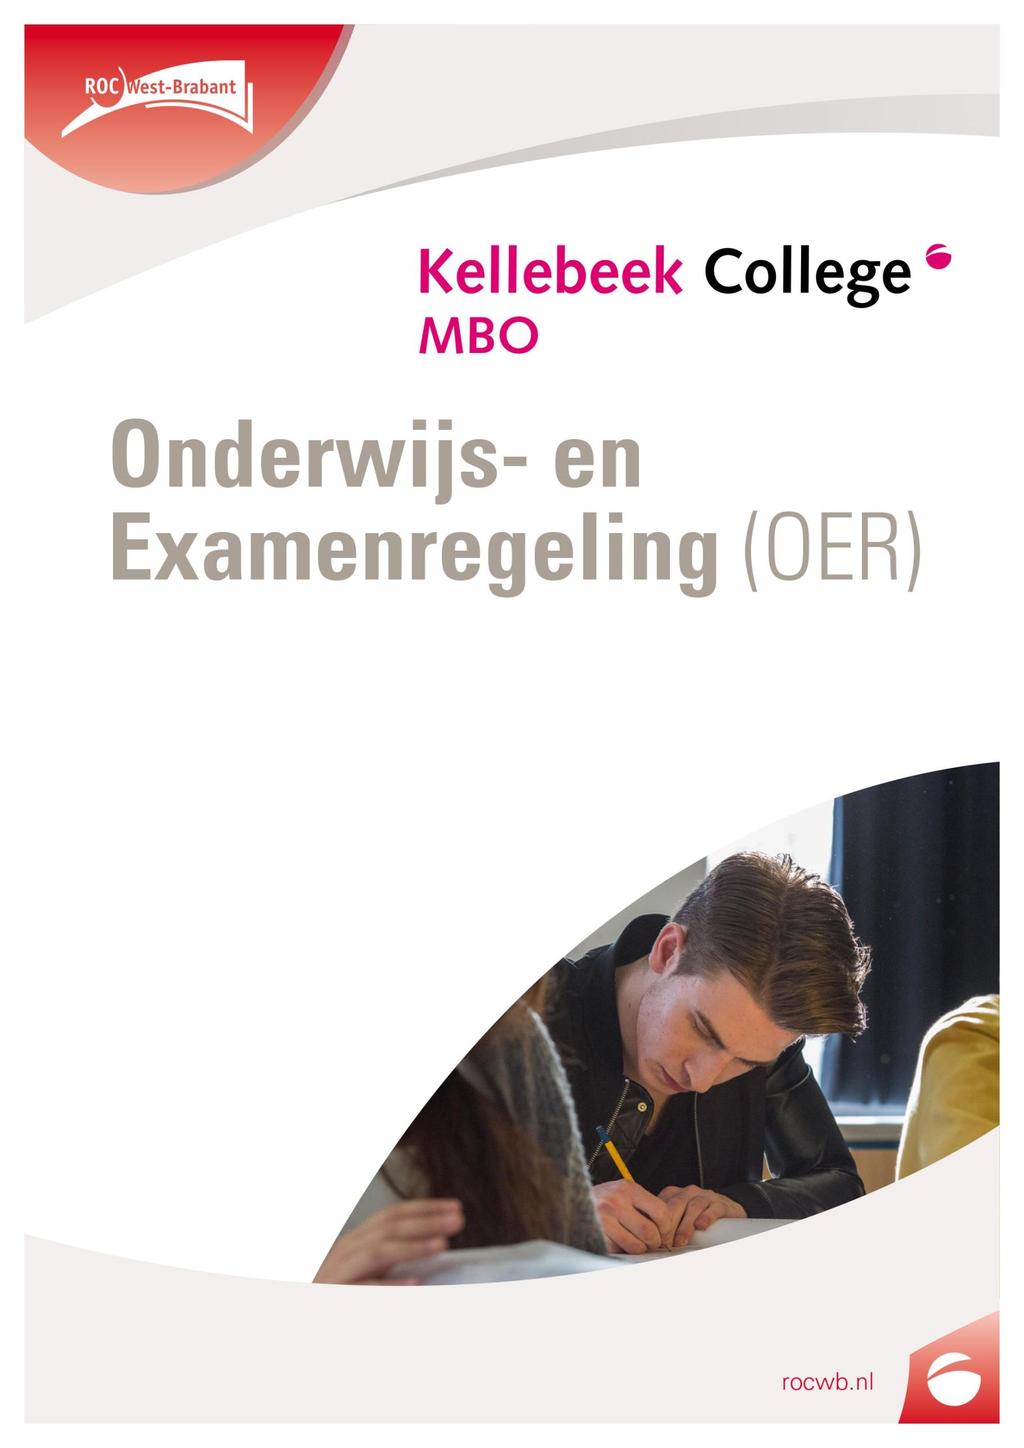 Naam opleiding Pedagogisch werk Leerweg Leerweg BOL Niveau 3 en 4 Cohort 2018-2021 Startdatum